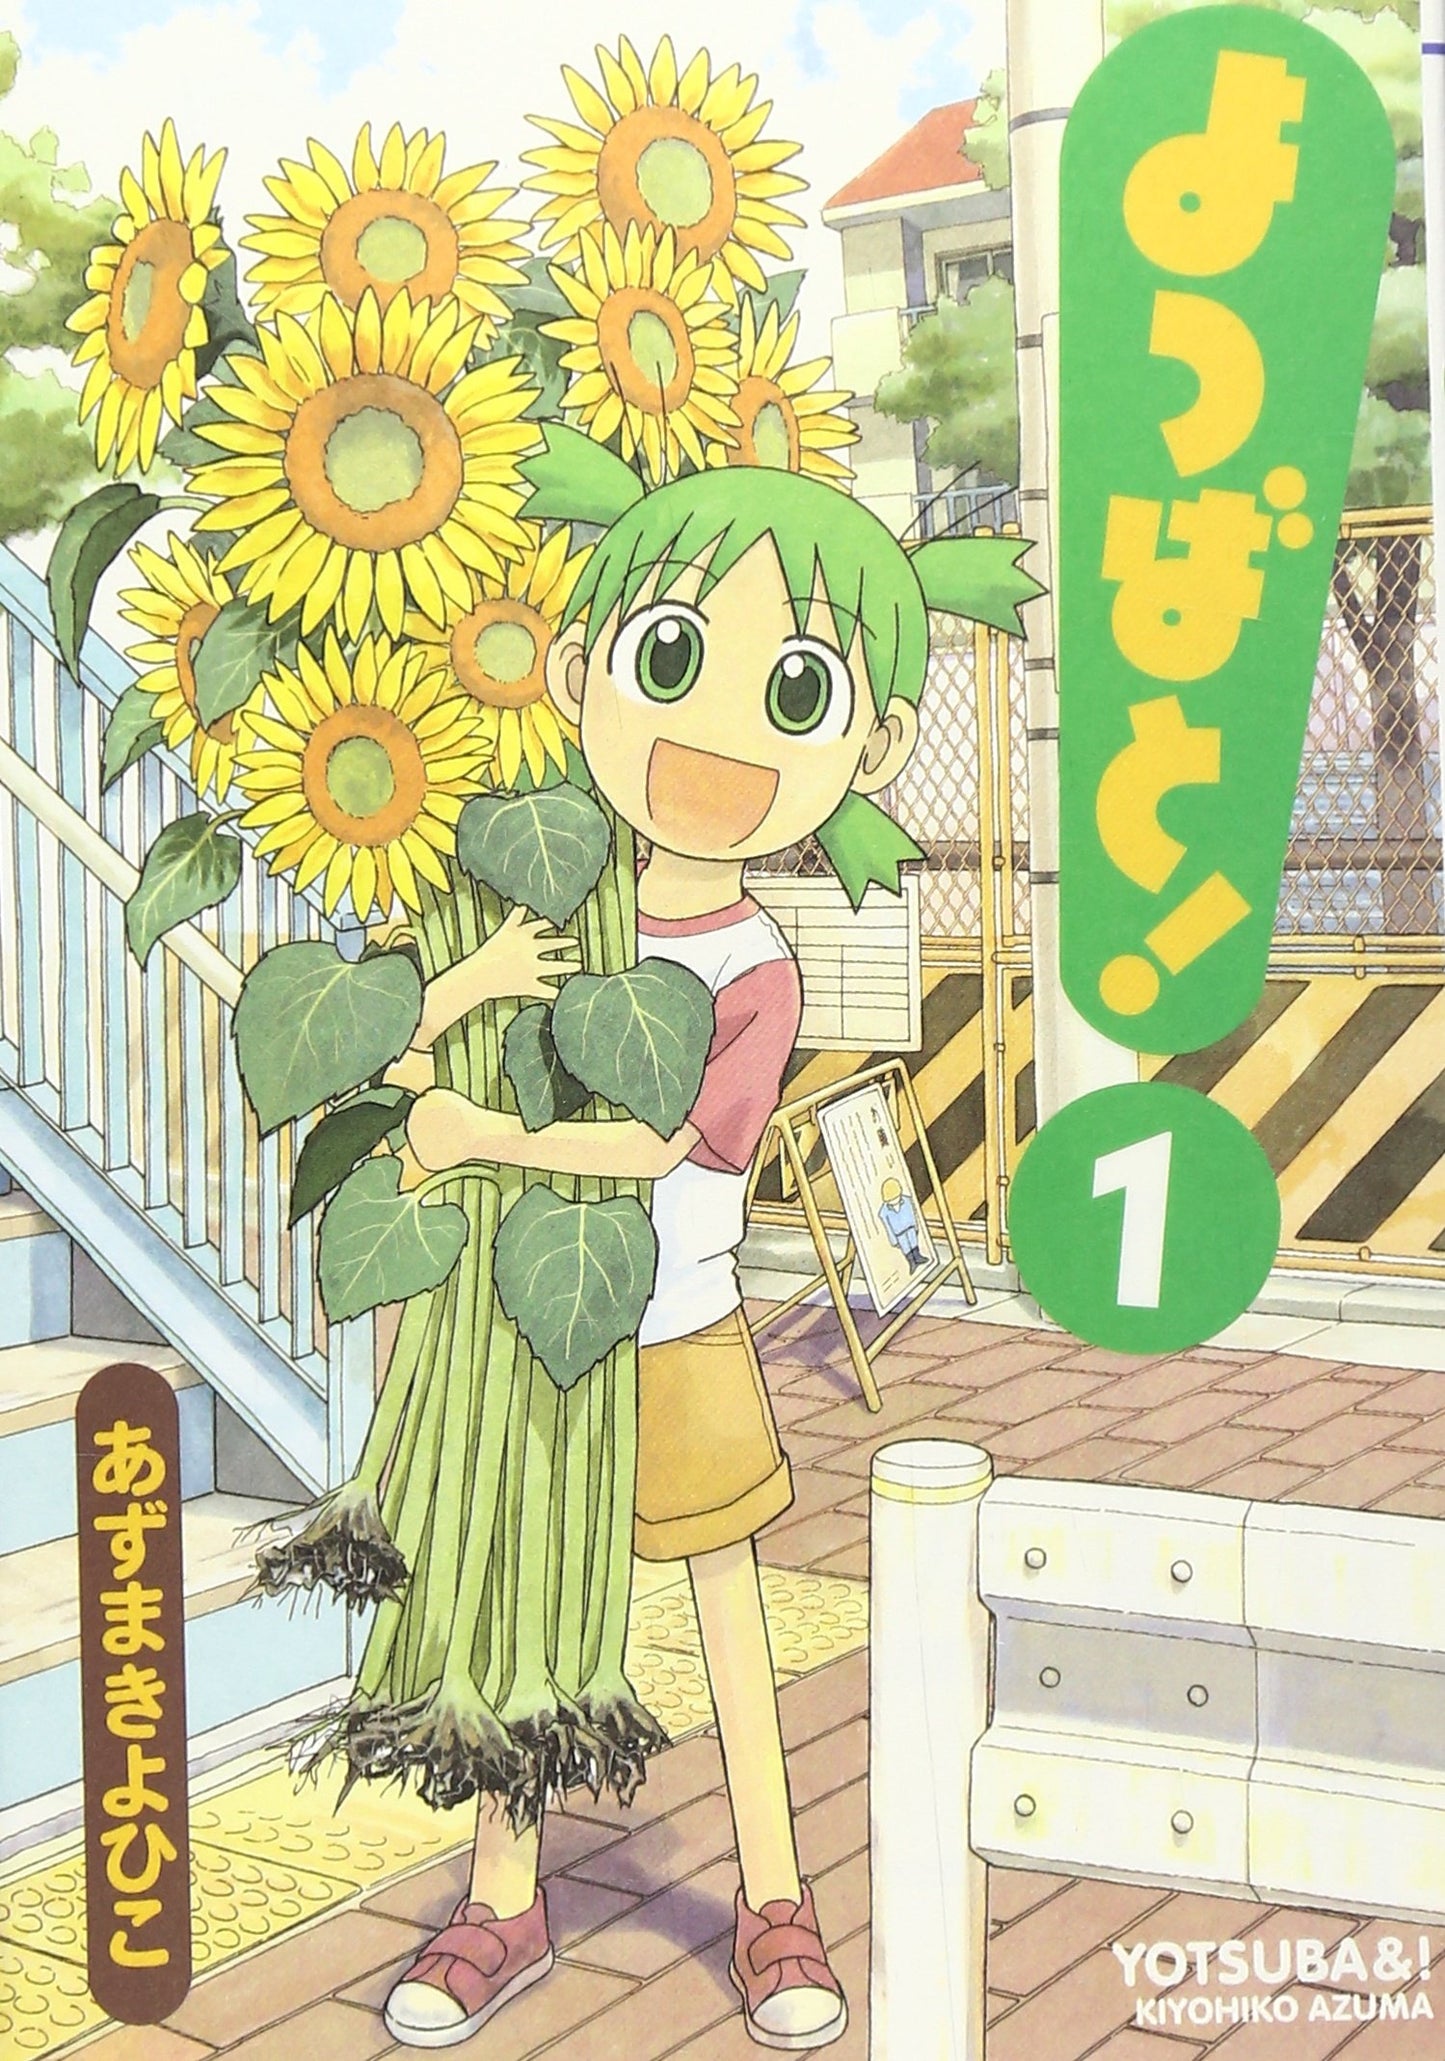 Yotsubato! (Yotsuba&!) Japanese manga volume 1 front cover